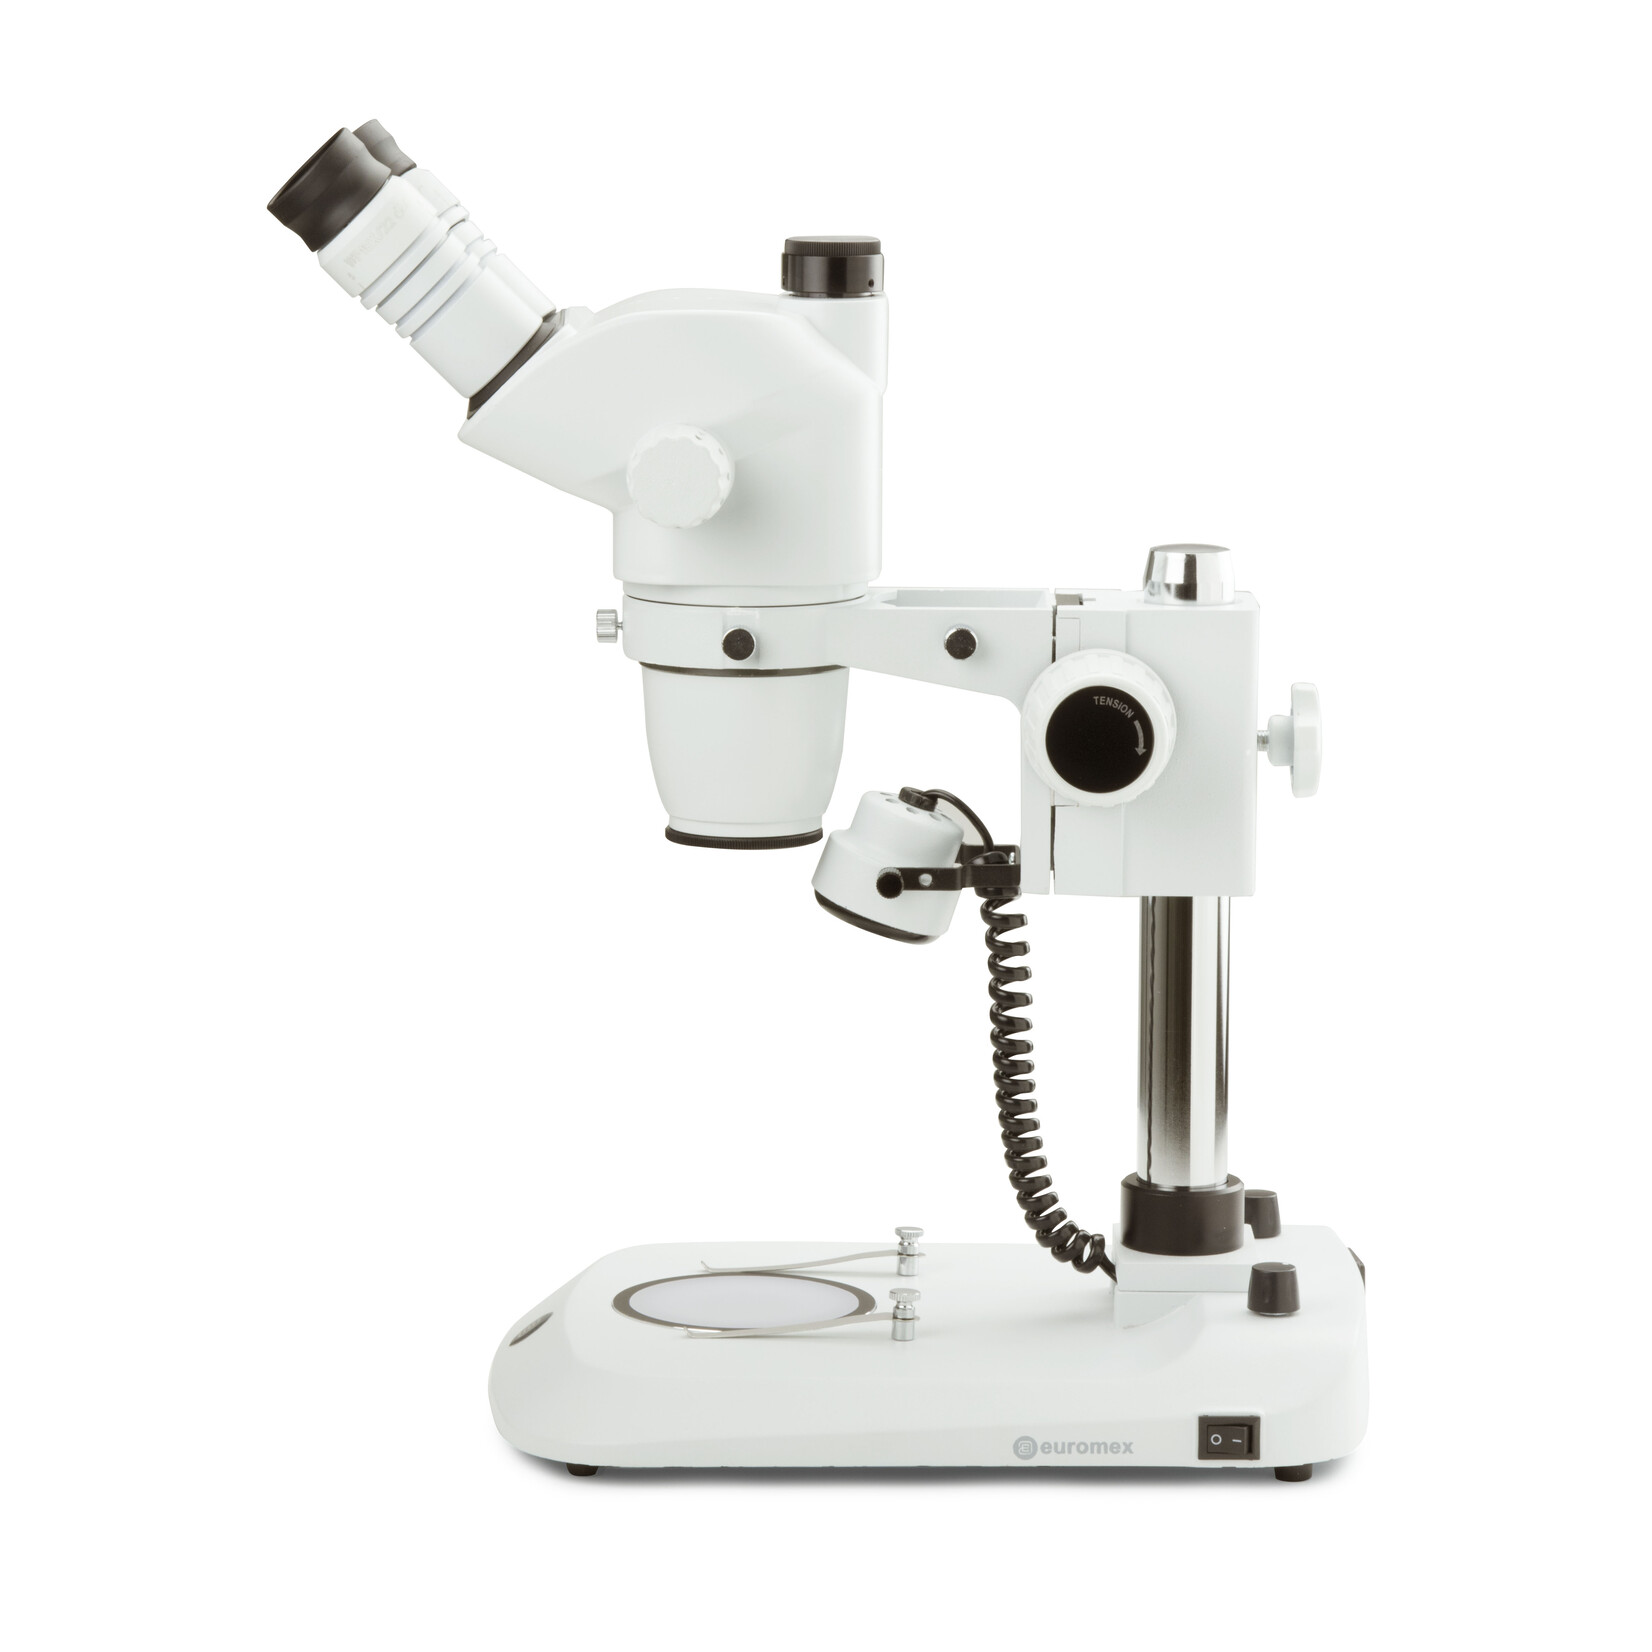 Trinokulares Stereo-Zoom-Mikroskop NexiusZoom EVO, 0,65x bis 5,5x Zoom Objektiv